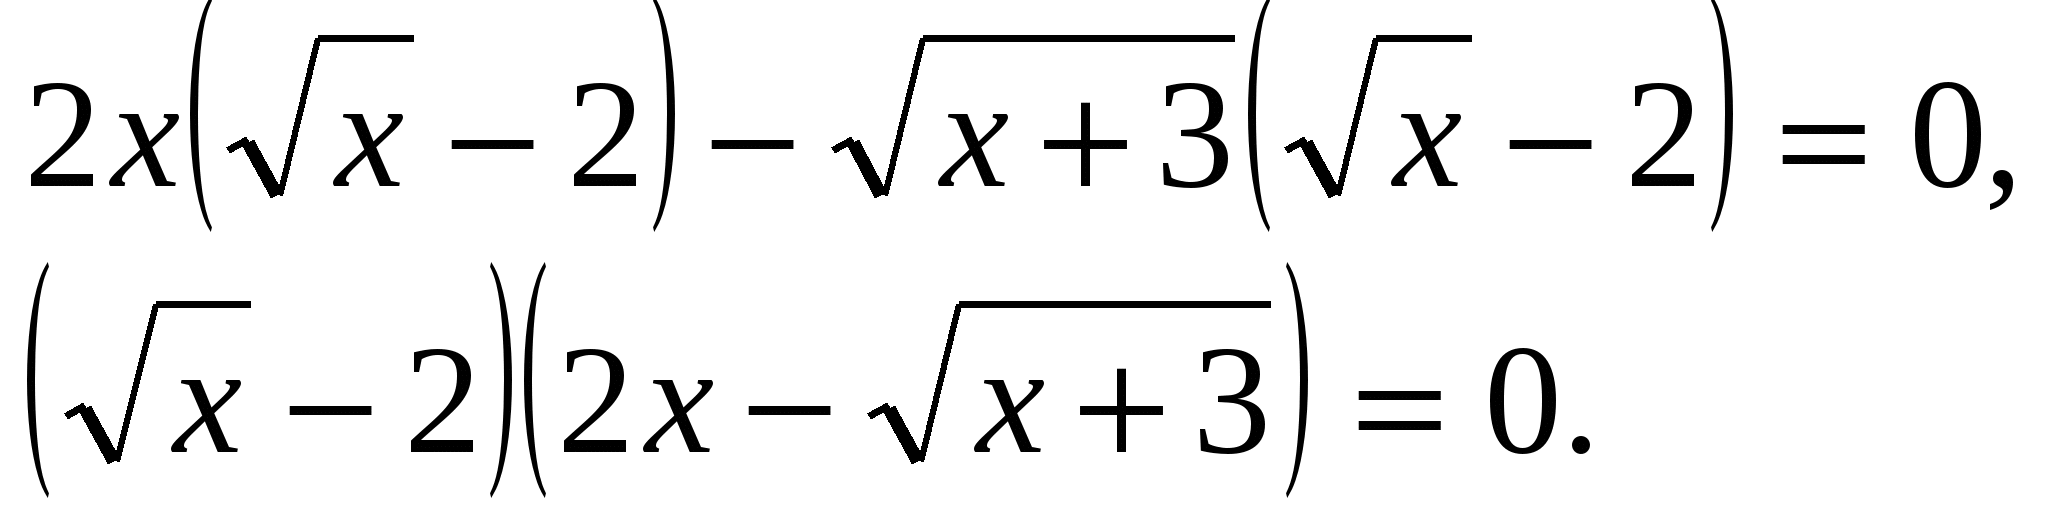 Конспект урока по математике методы решения иррациональных уравнений